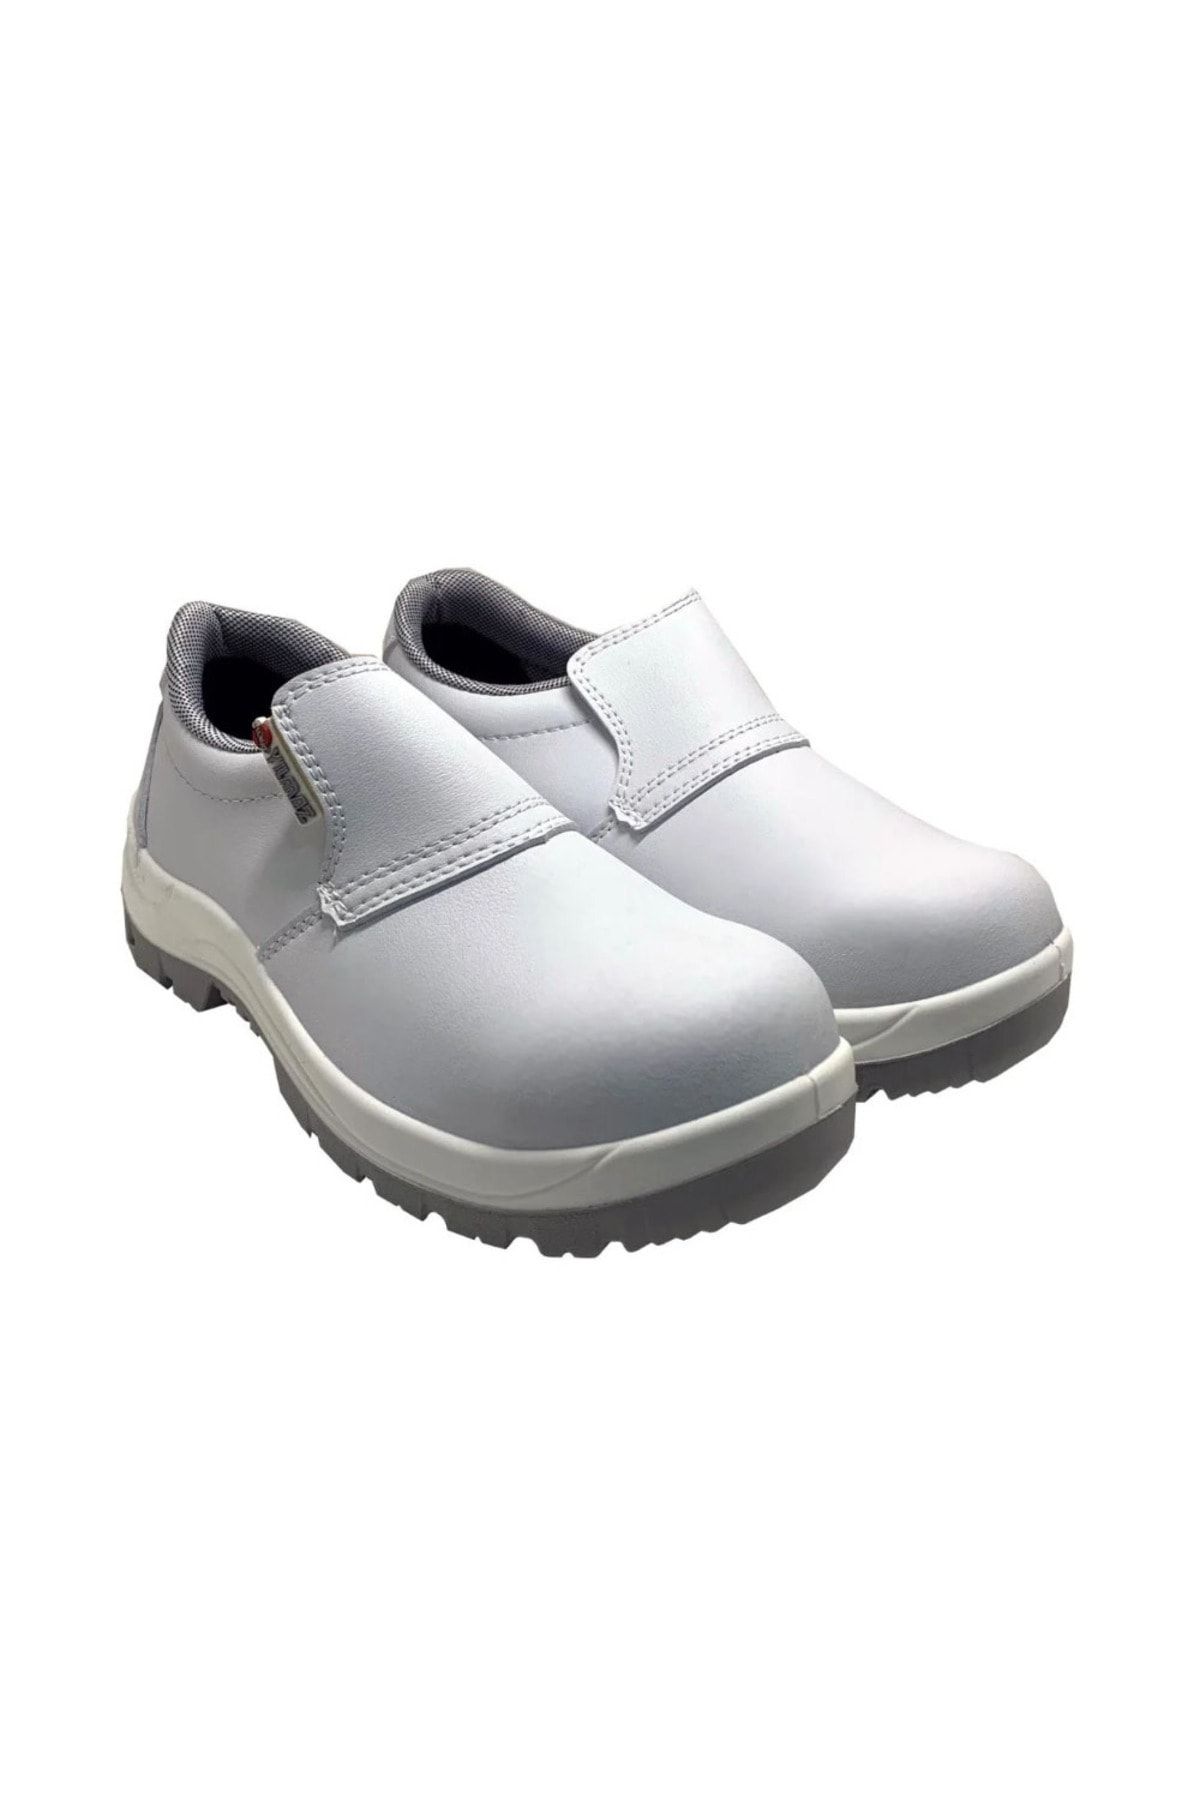 YILMAZ 902-s2 Antibakteriyel Beyaz Çelik Burunlu Iş Ayakkabısı